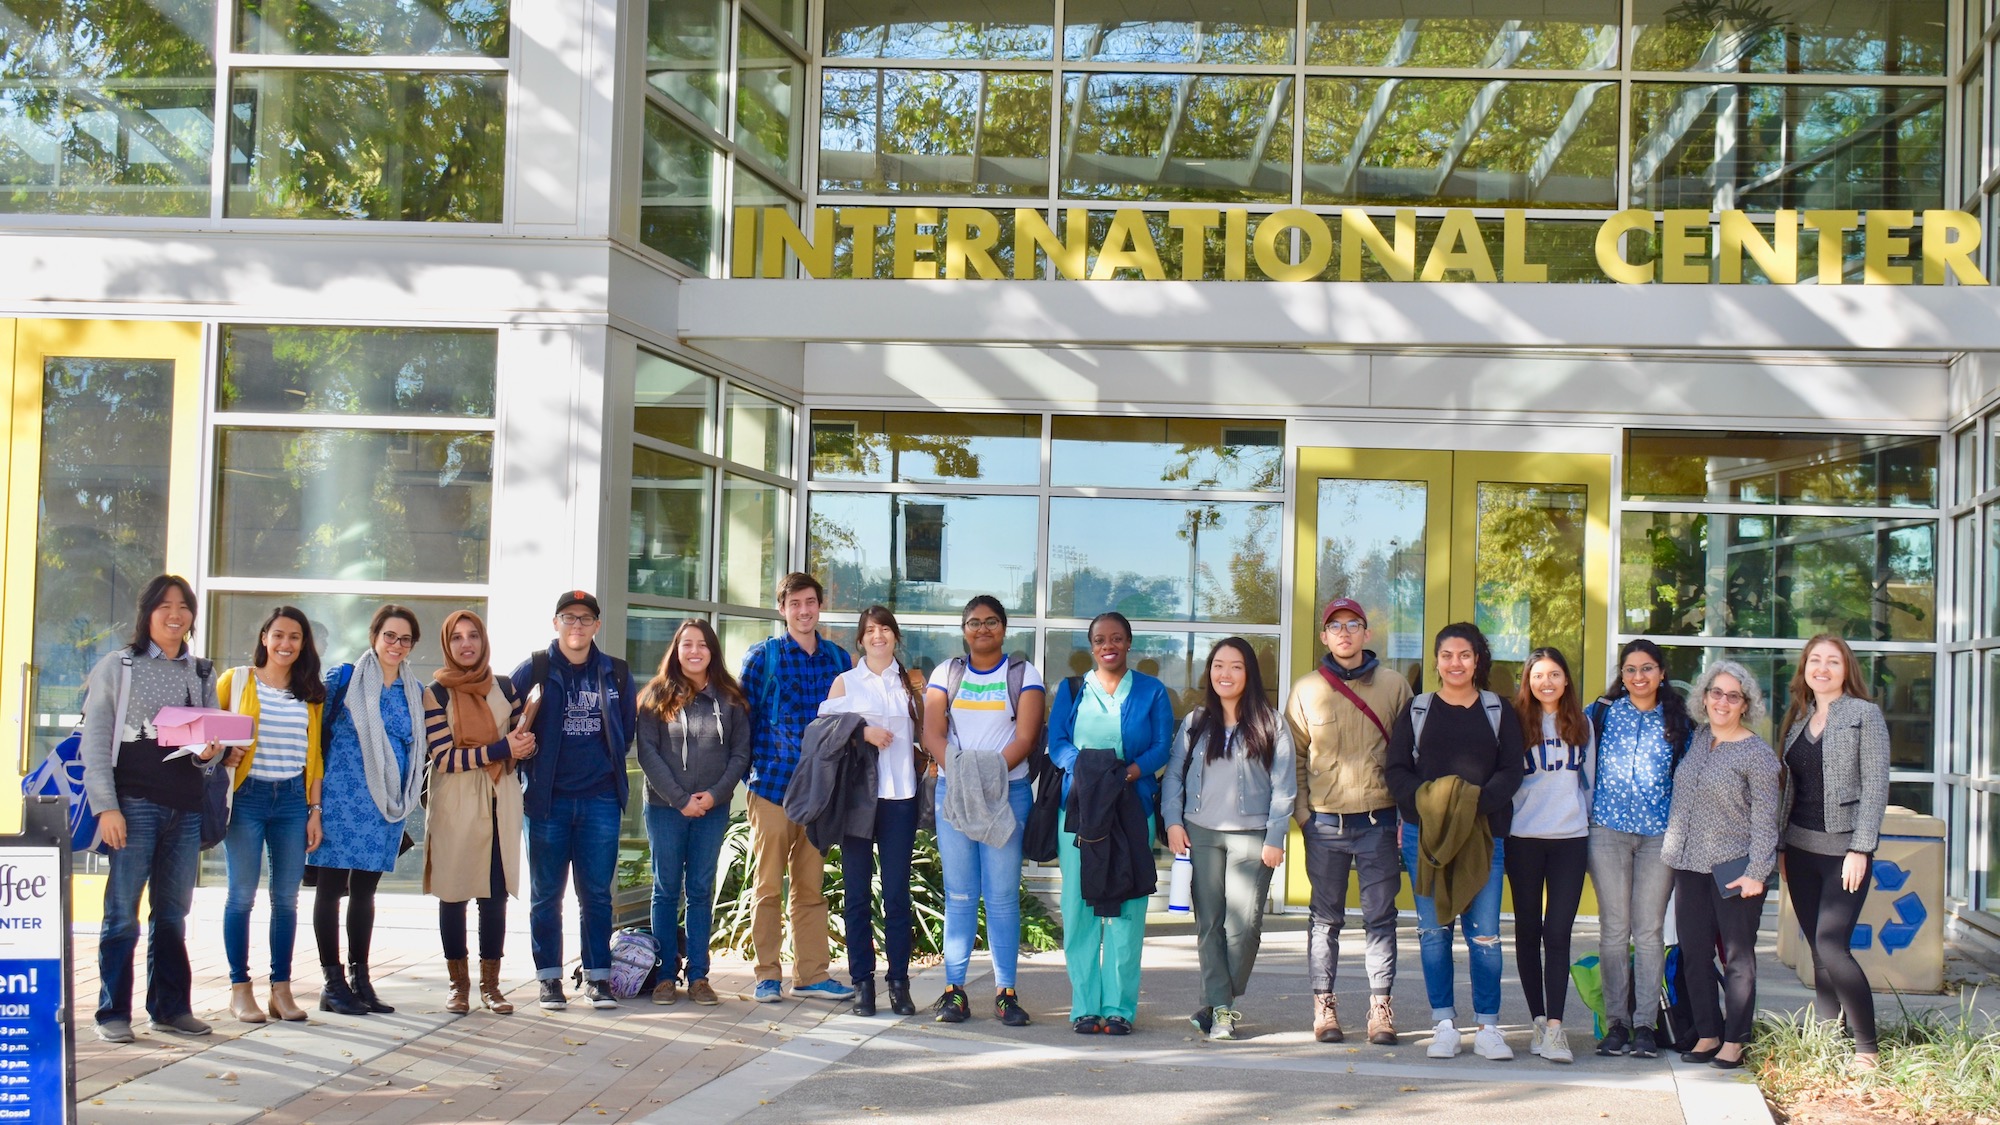 Global Education for All Fellows outside International Center